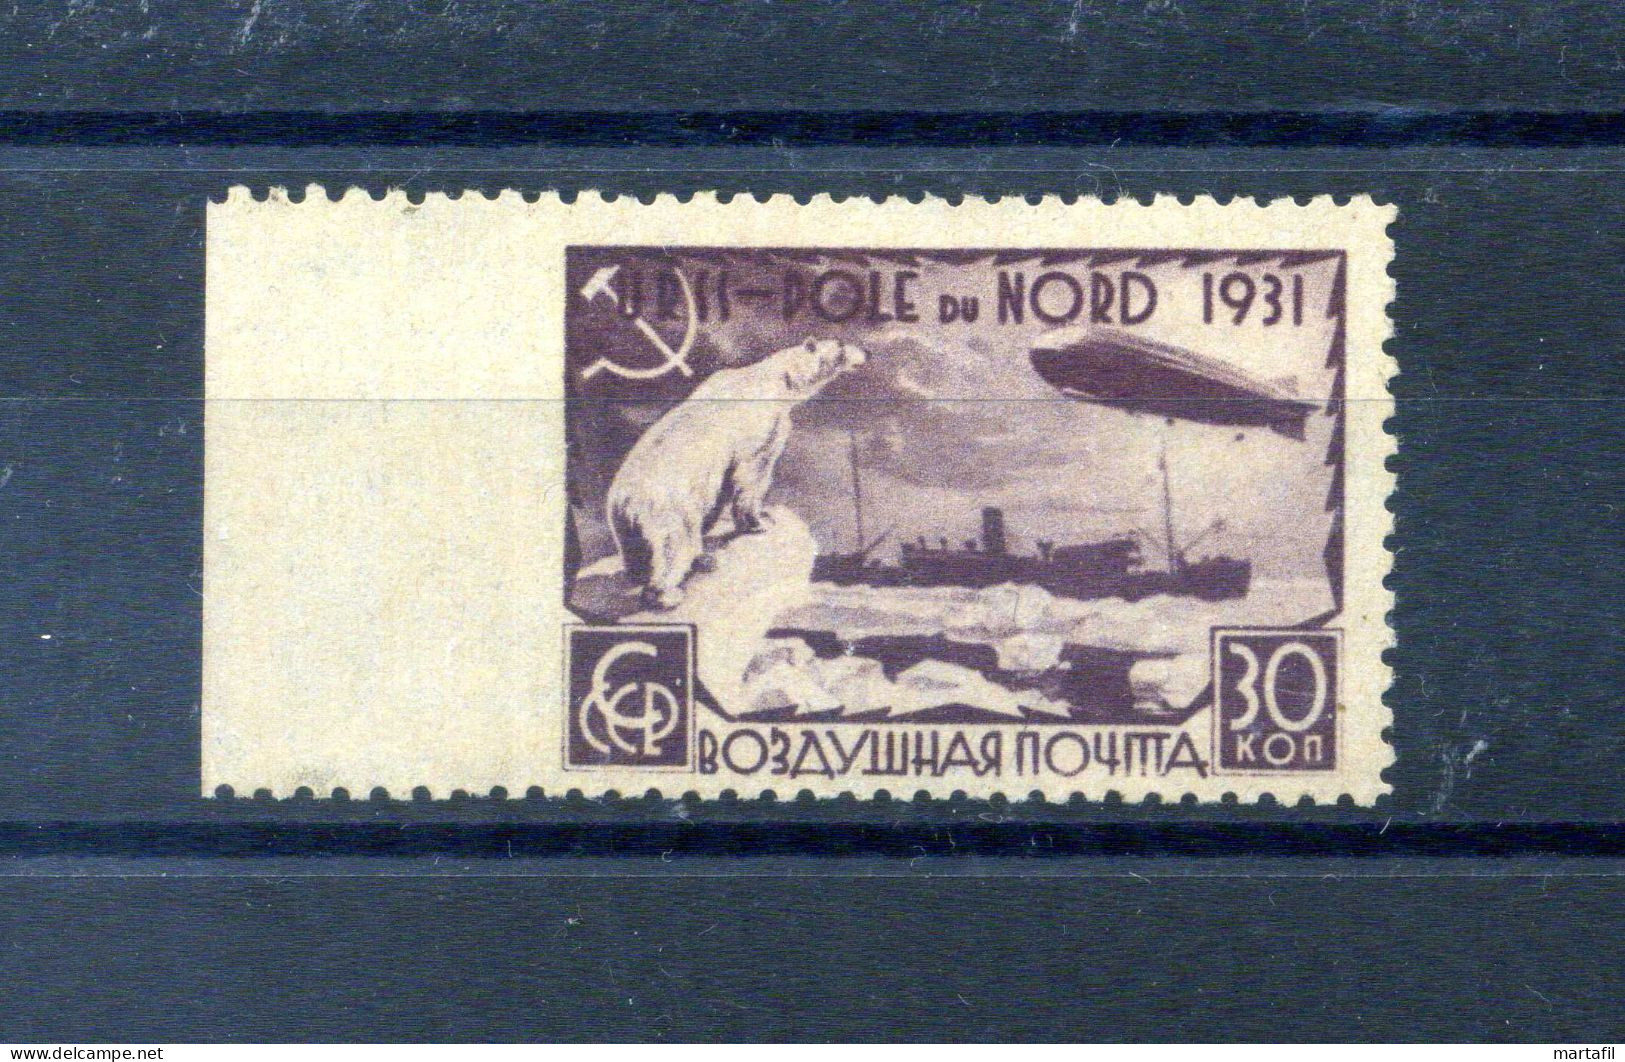 1931 URSS A27 30k. MNH ** Varietà - Non Dentellato A Sinistra - Timbrino Kubler - Graf Zeppelin Polo Nord - Plaatfouten & Curiosa